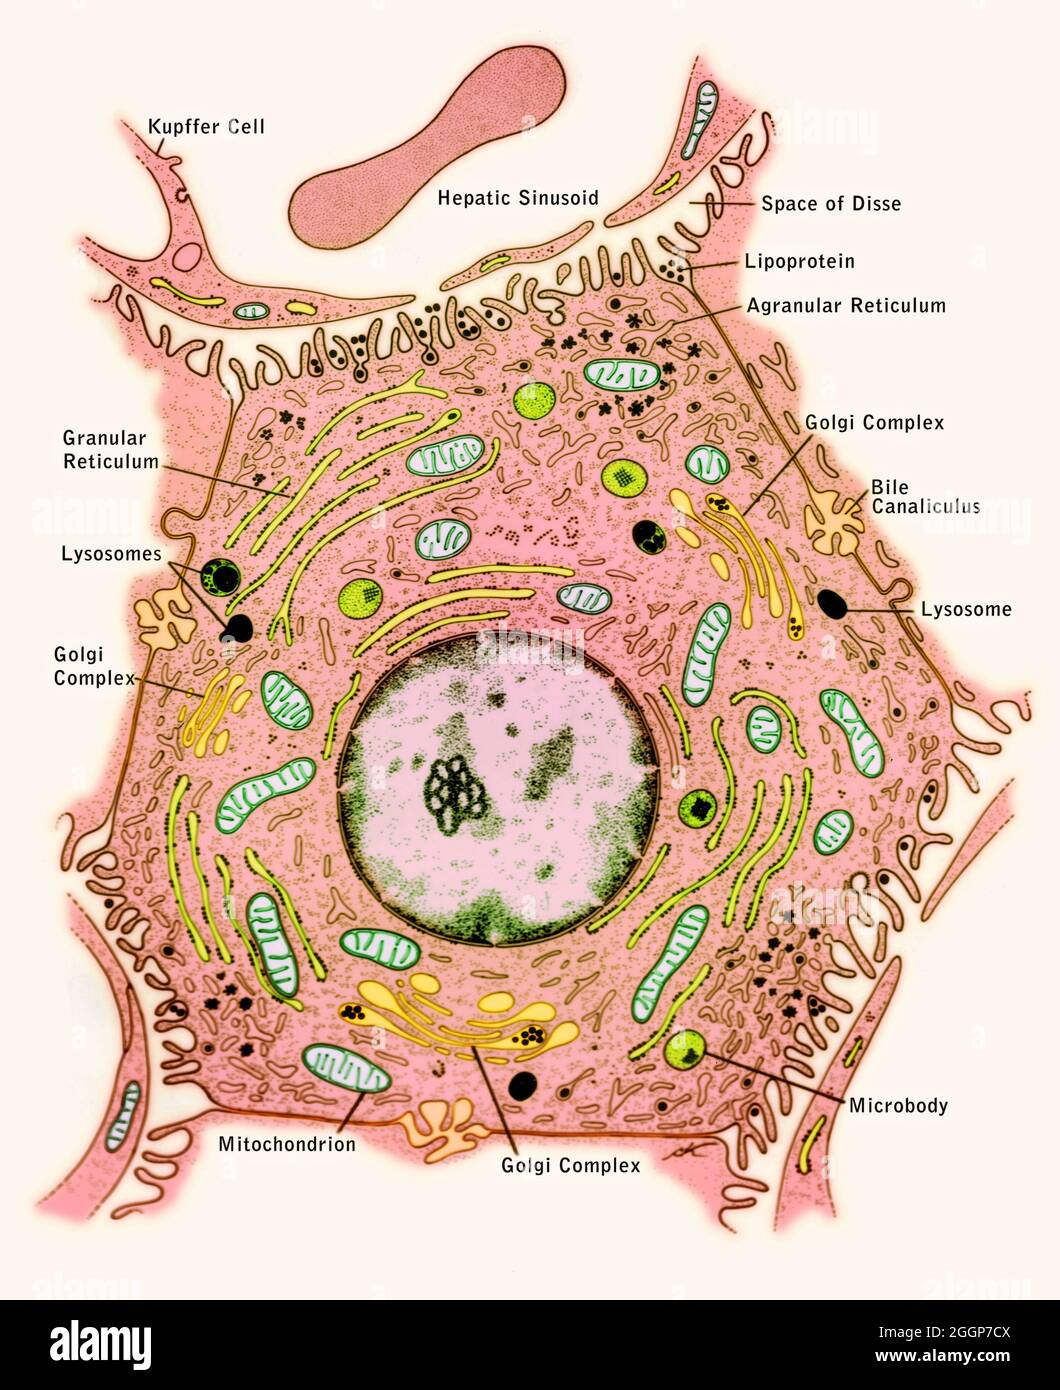 Beschriftetes, illustriertes Diagramm der Ultrastruktur und der Beziehungen einer Leberzelle. Stockfoto